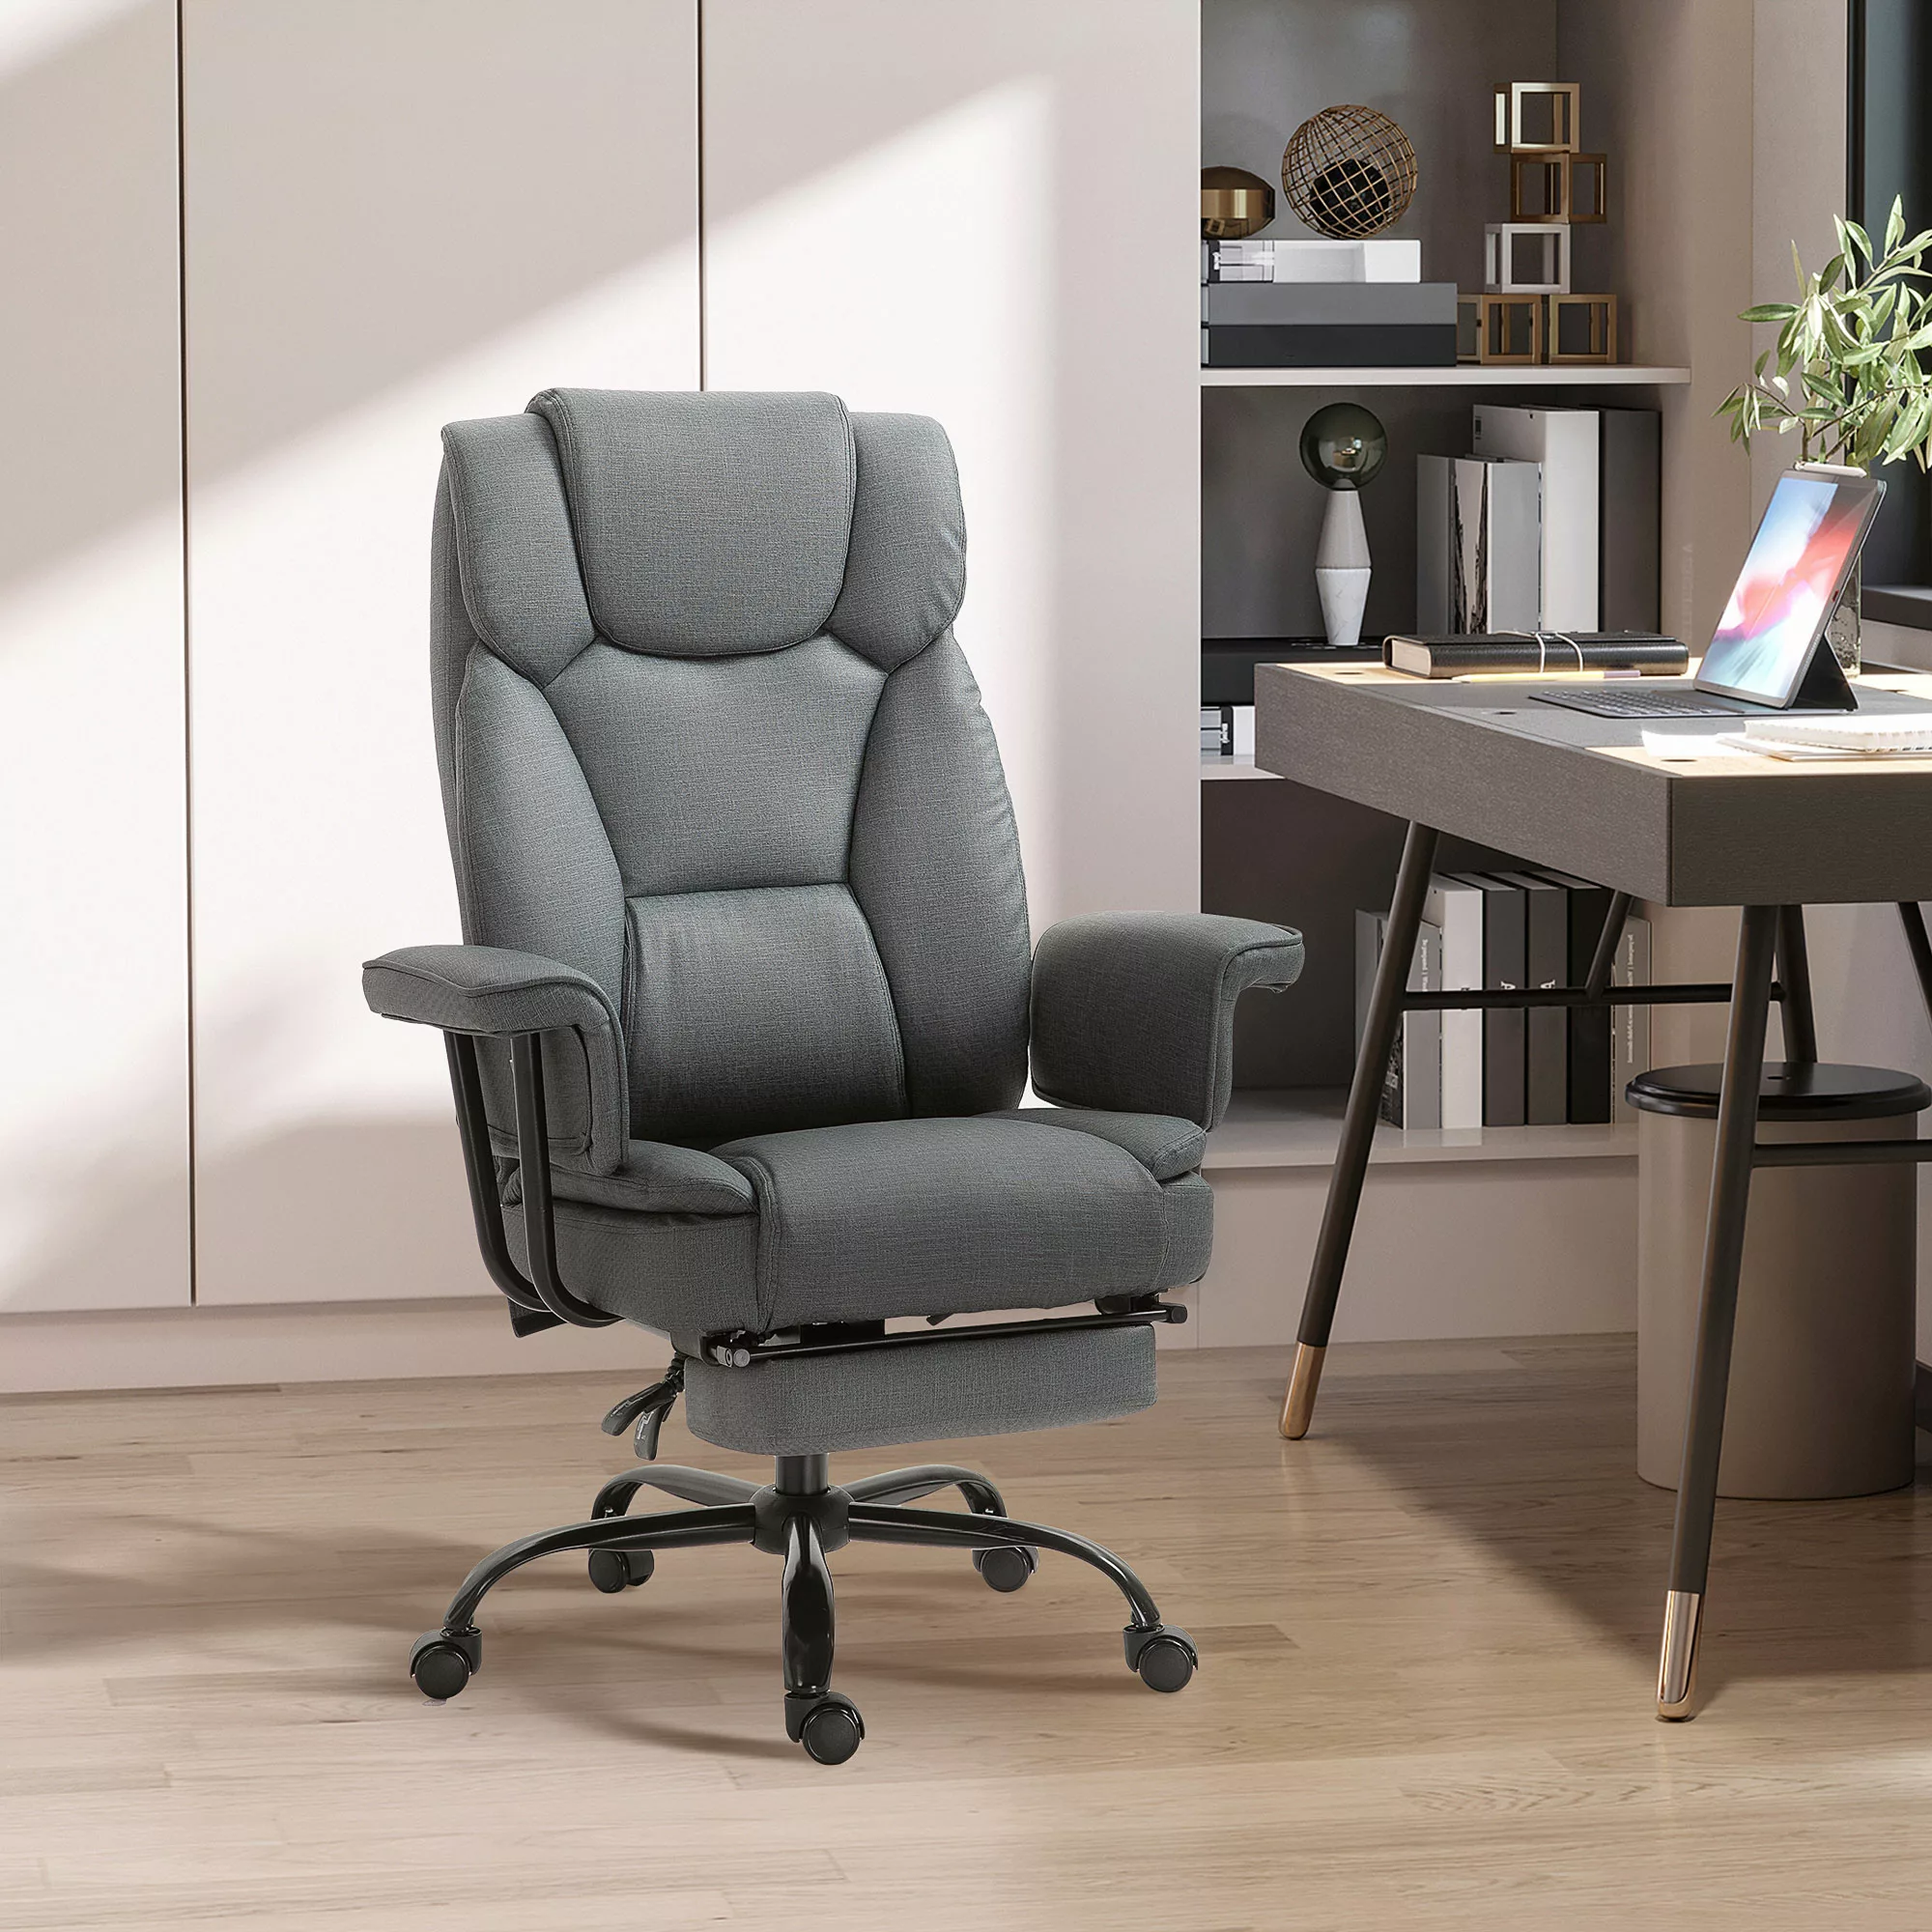 Vinsetto Bürostuhl ergonomischer Chefsessel 360° Drehbar Computerstuhl höhe günstig online kaufen